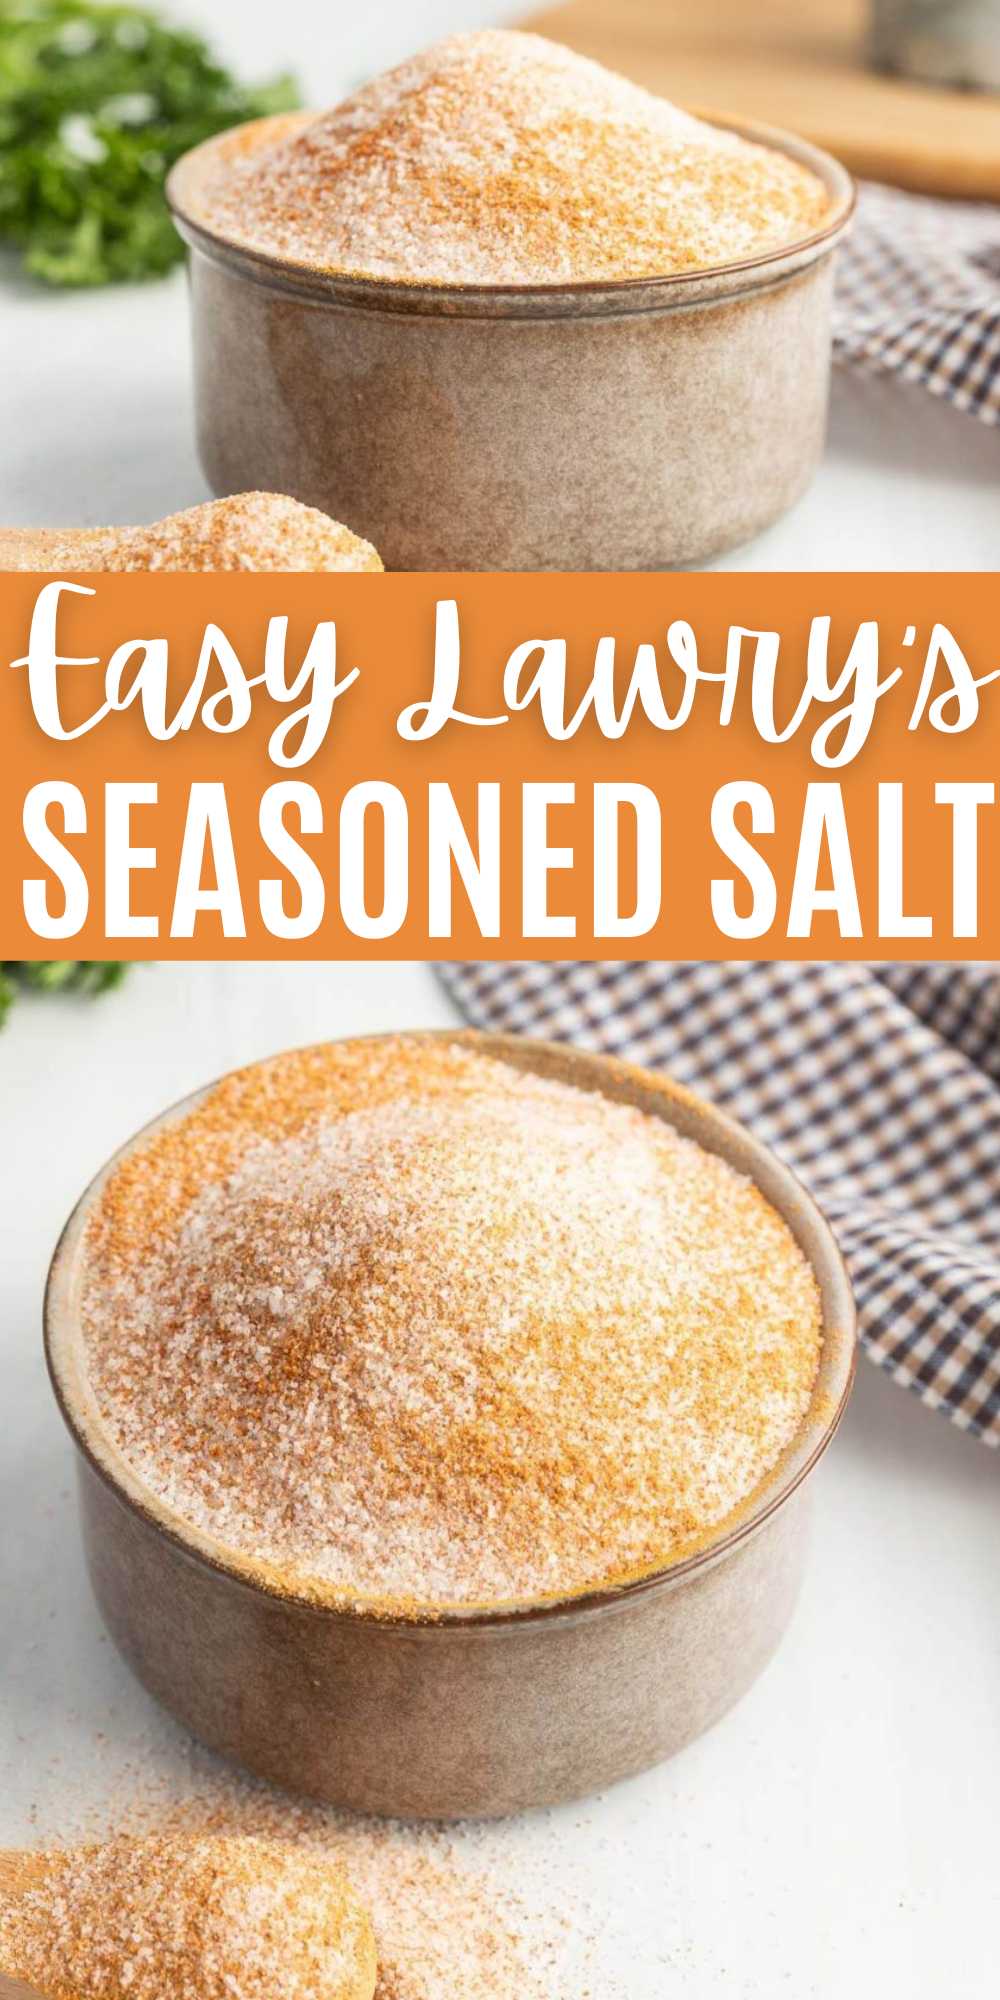 https://www.eatingonadime.com/wp-content/uploads/2023/02/lawrys-seasoned-salt-3-1.jpg